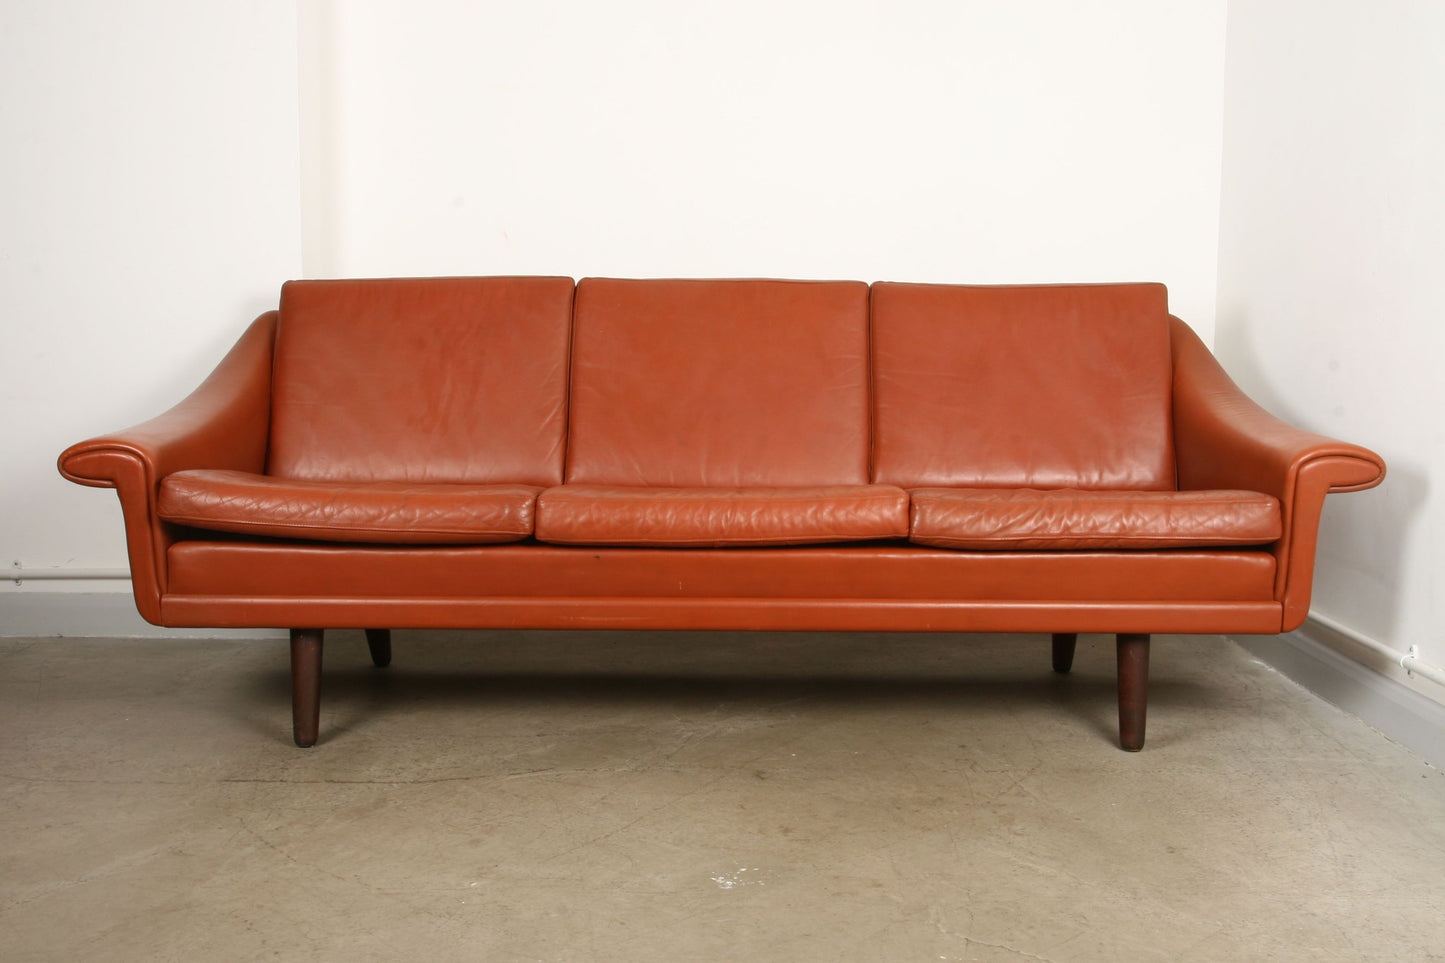 Tan leather three seat sofa